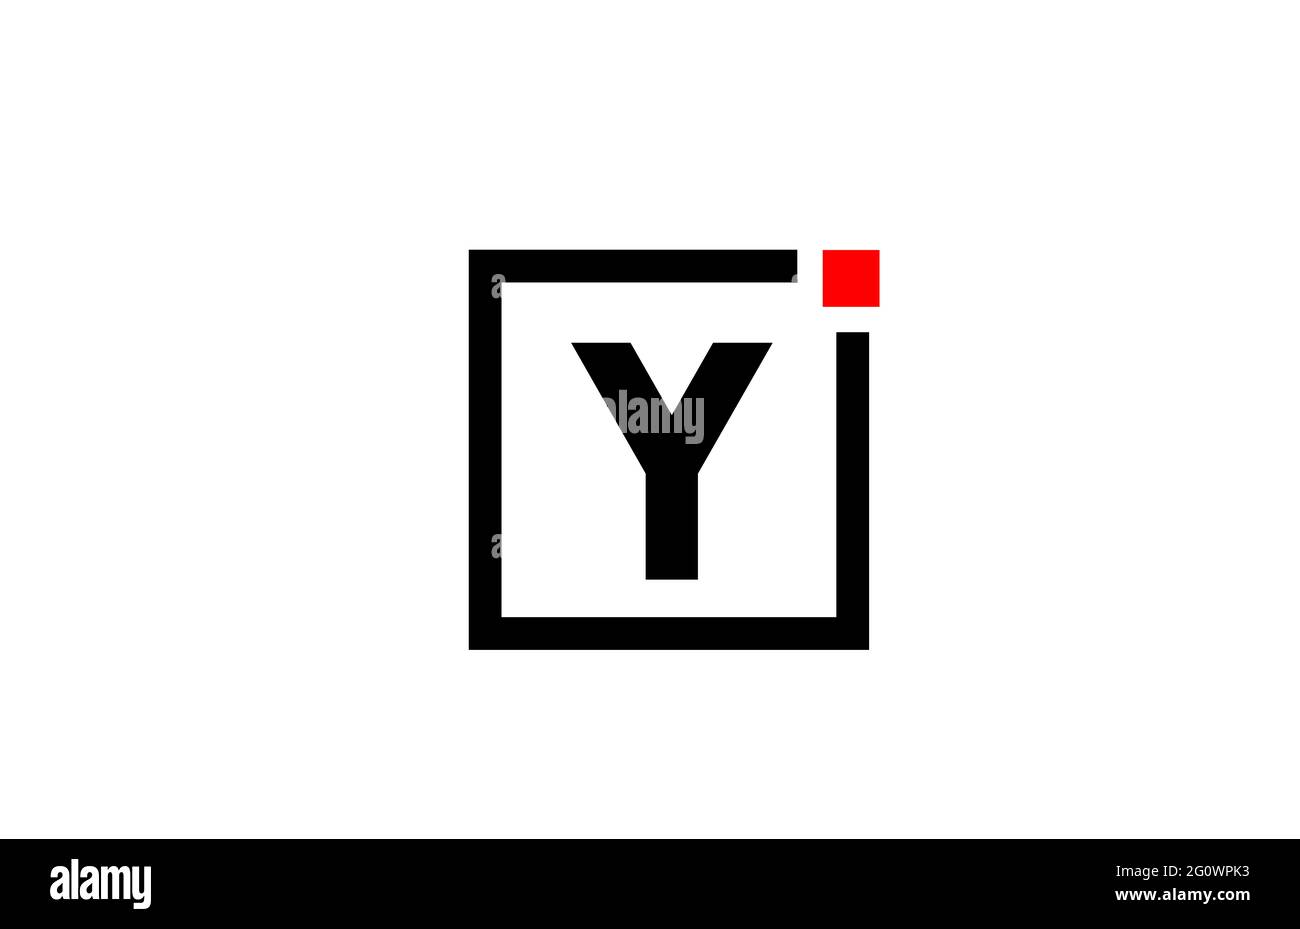 Logo con l'icona della lettera dell'alfabeto Y in bianco e nero. Design aziendale e aziendale con punto quadrato e rosso. Modello di identità aziendale creativa Foto Stock